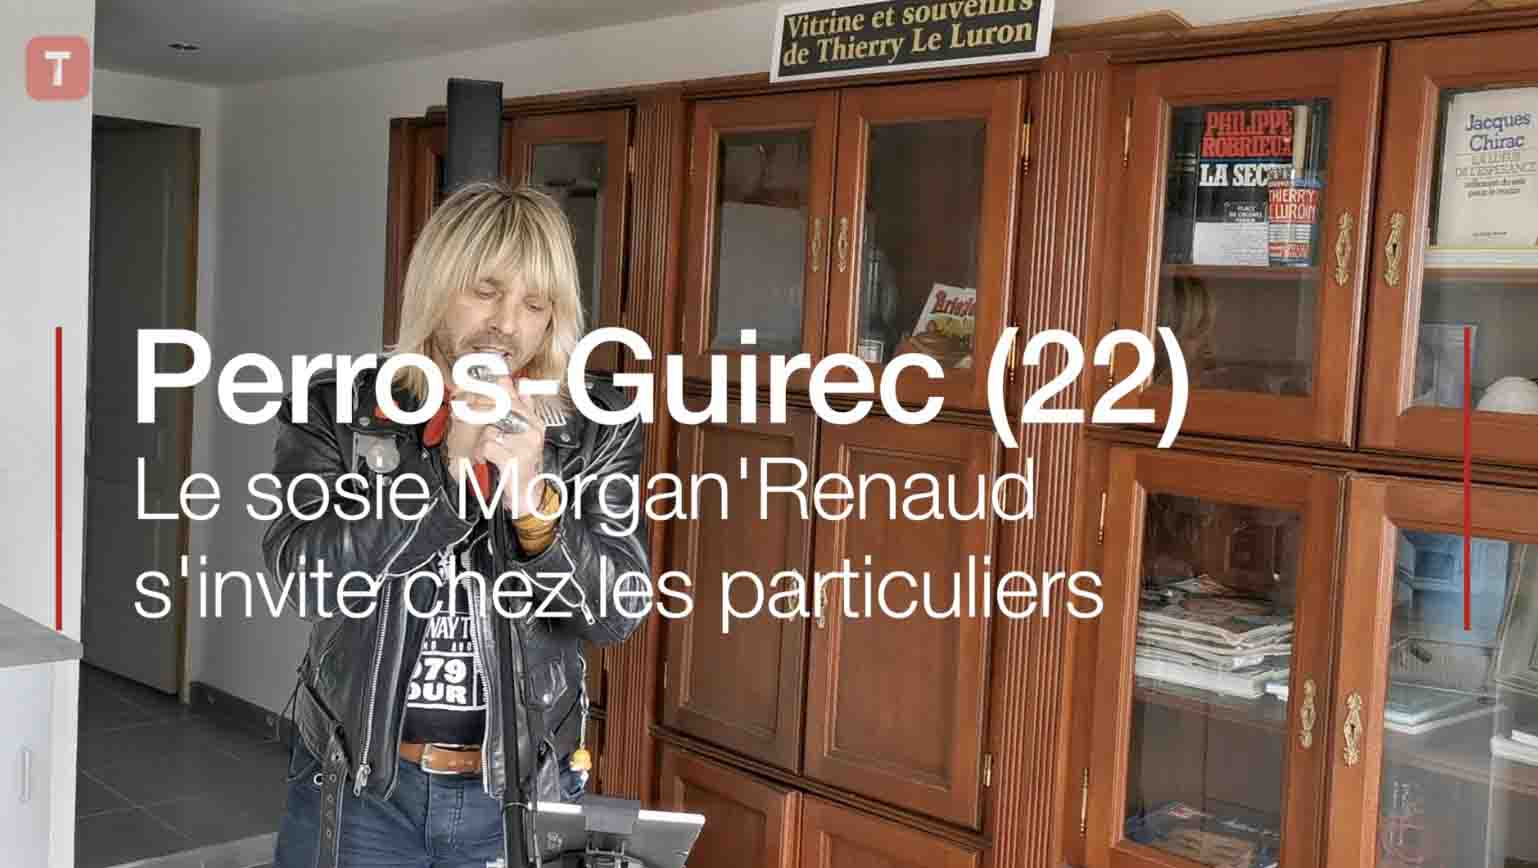 Perros-Guirec (22). Le sosie Morgan'Renaud s'invite chez les particuliers (Le Télégramme)